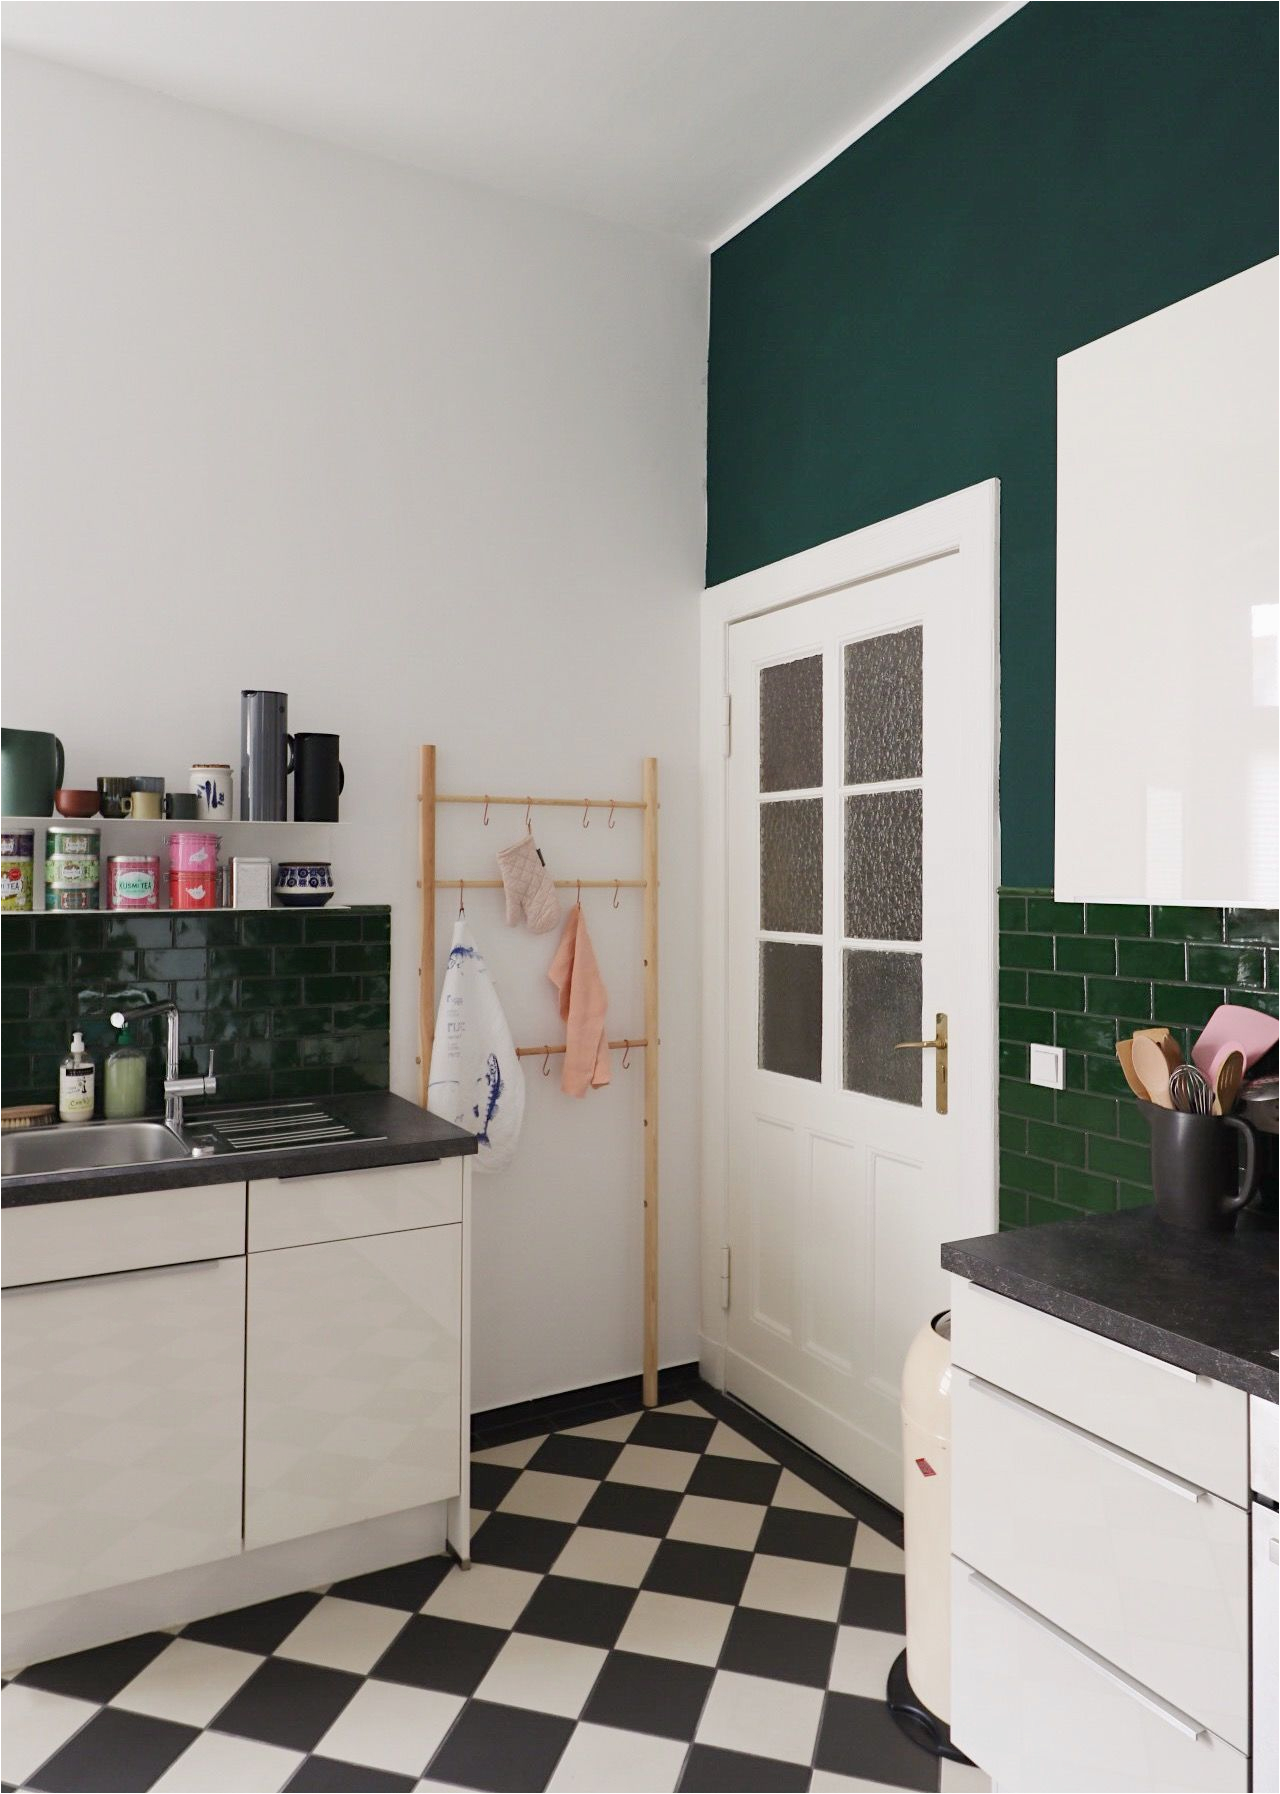 Küche Apfelgrün Streichen Wandfarbe Grün Die Besten Ideen Und Tipps Zum Streichen